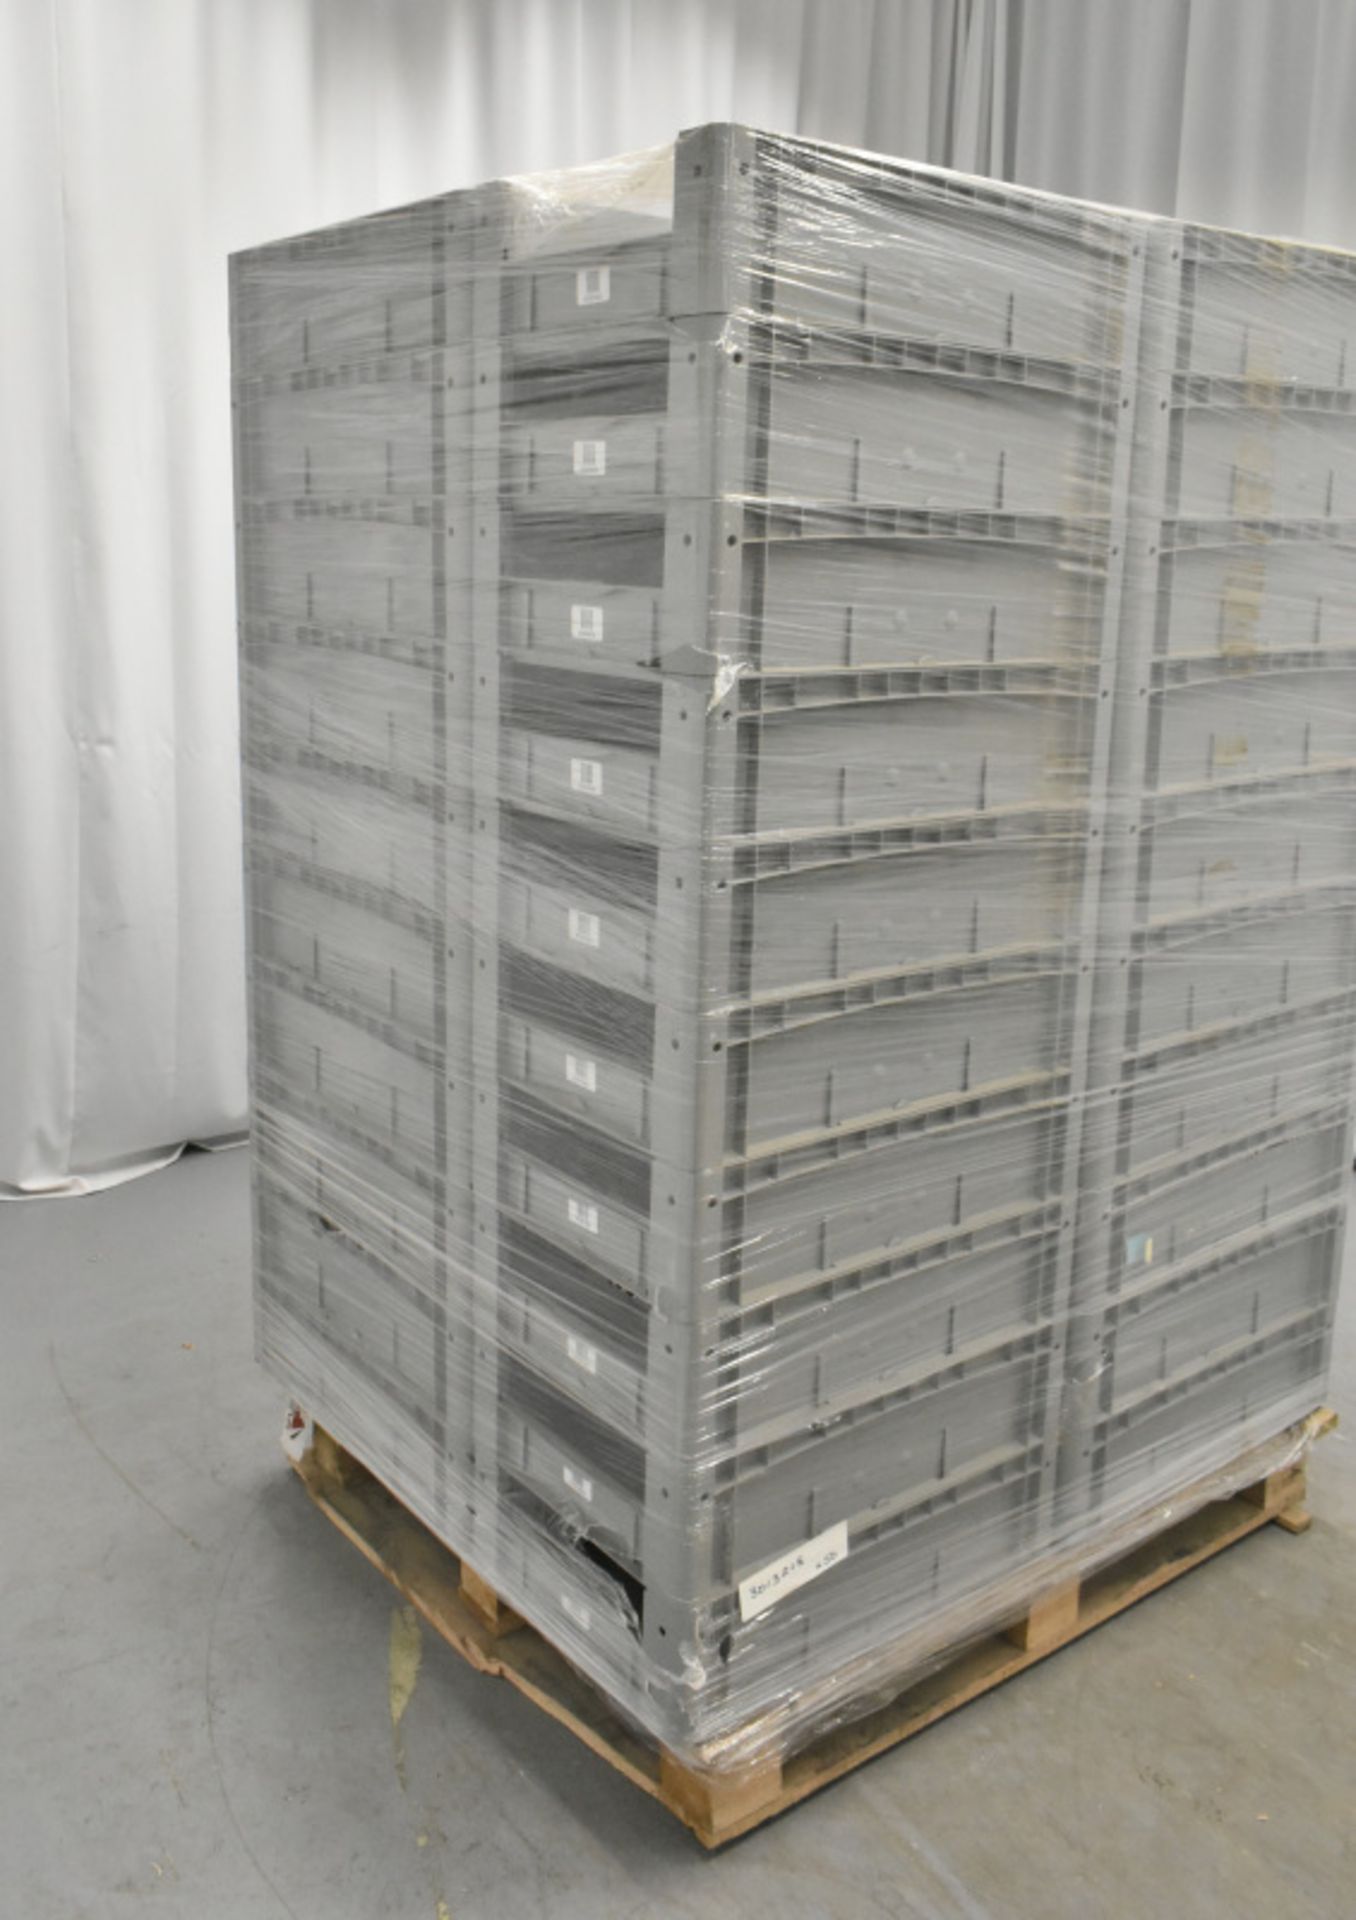 50x Tote Storage Boxes - L600 x W400 x H150mm - Image 4 of 4